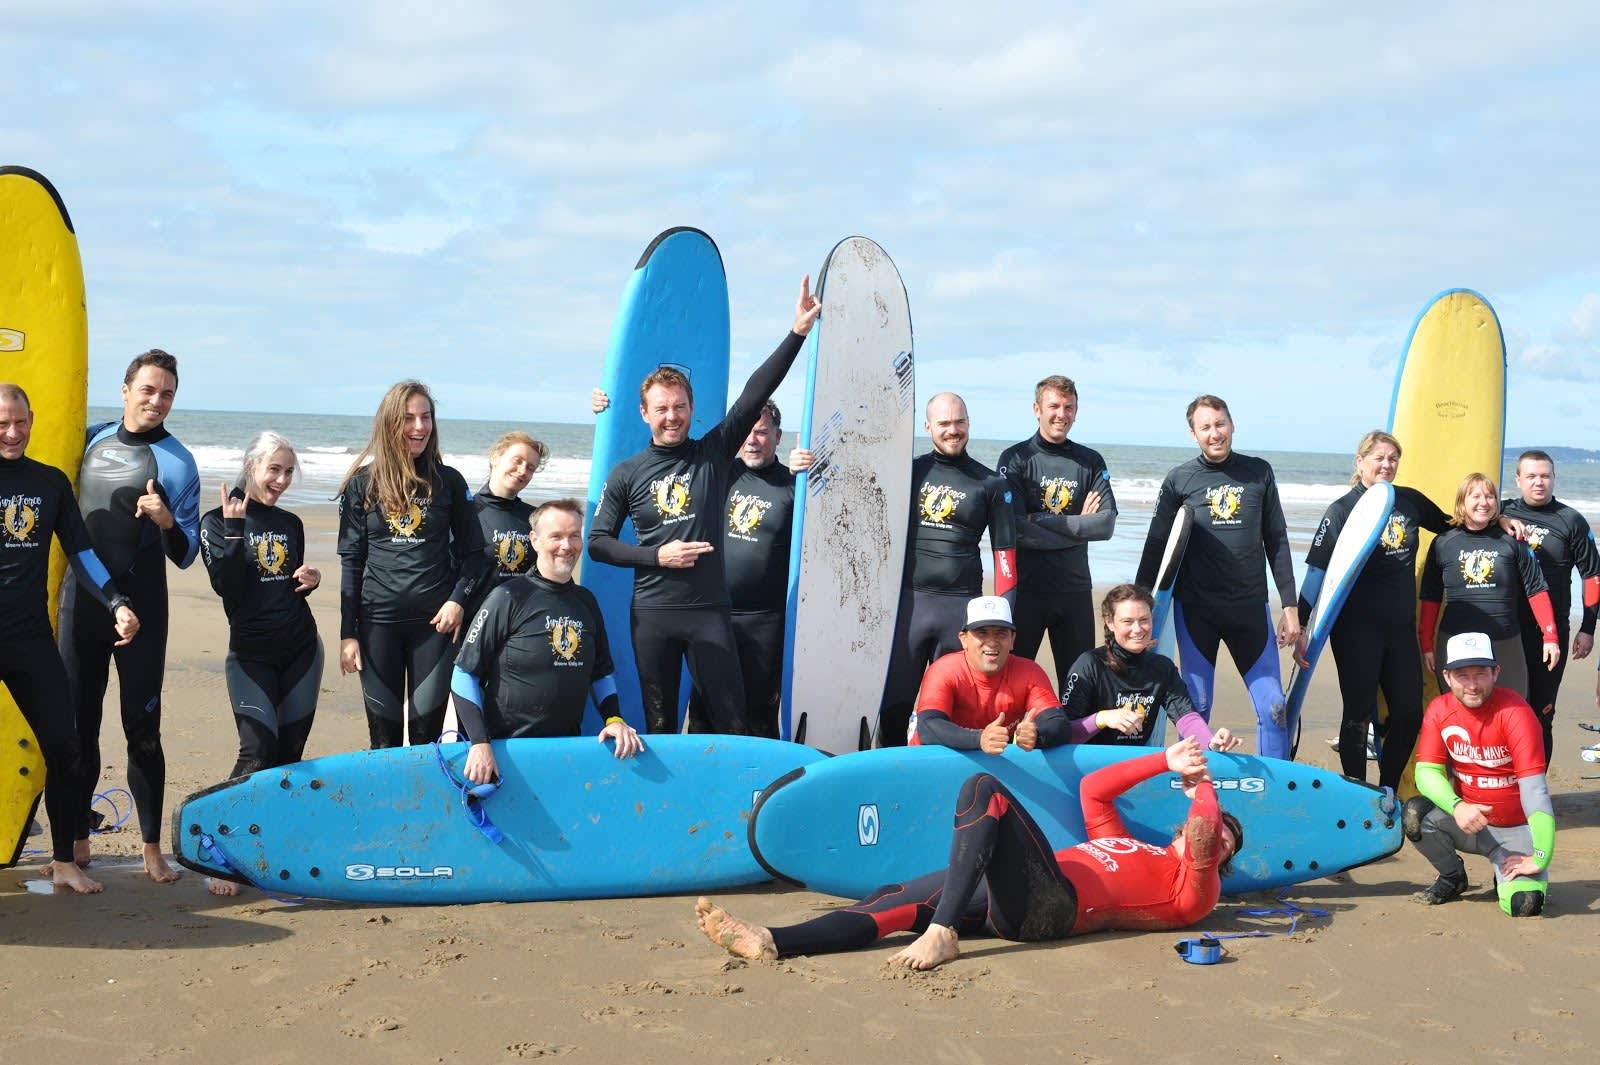 Fotografía grupal de la conferencia de Trailblazer Community tomada en Surf Force